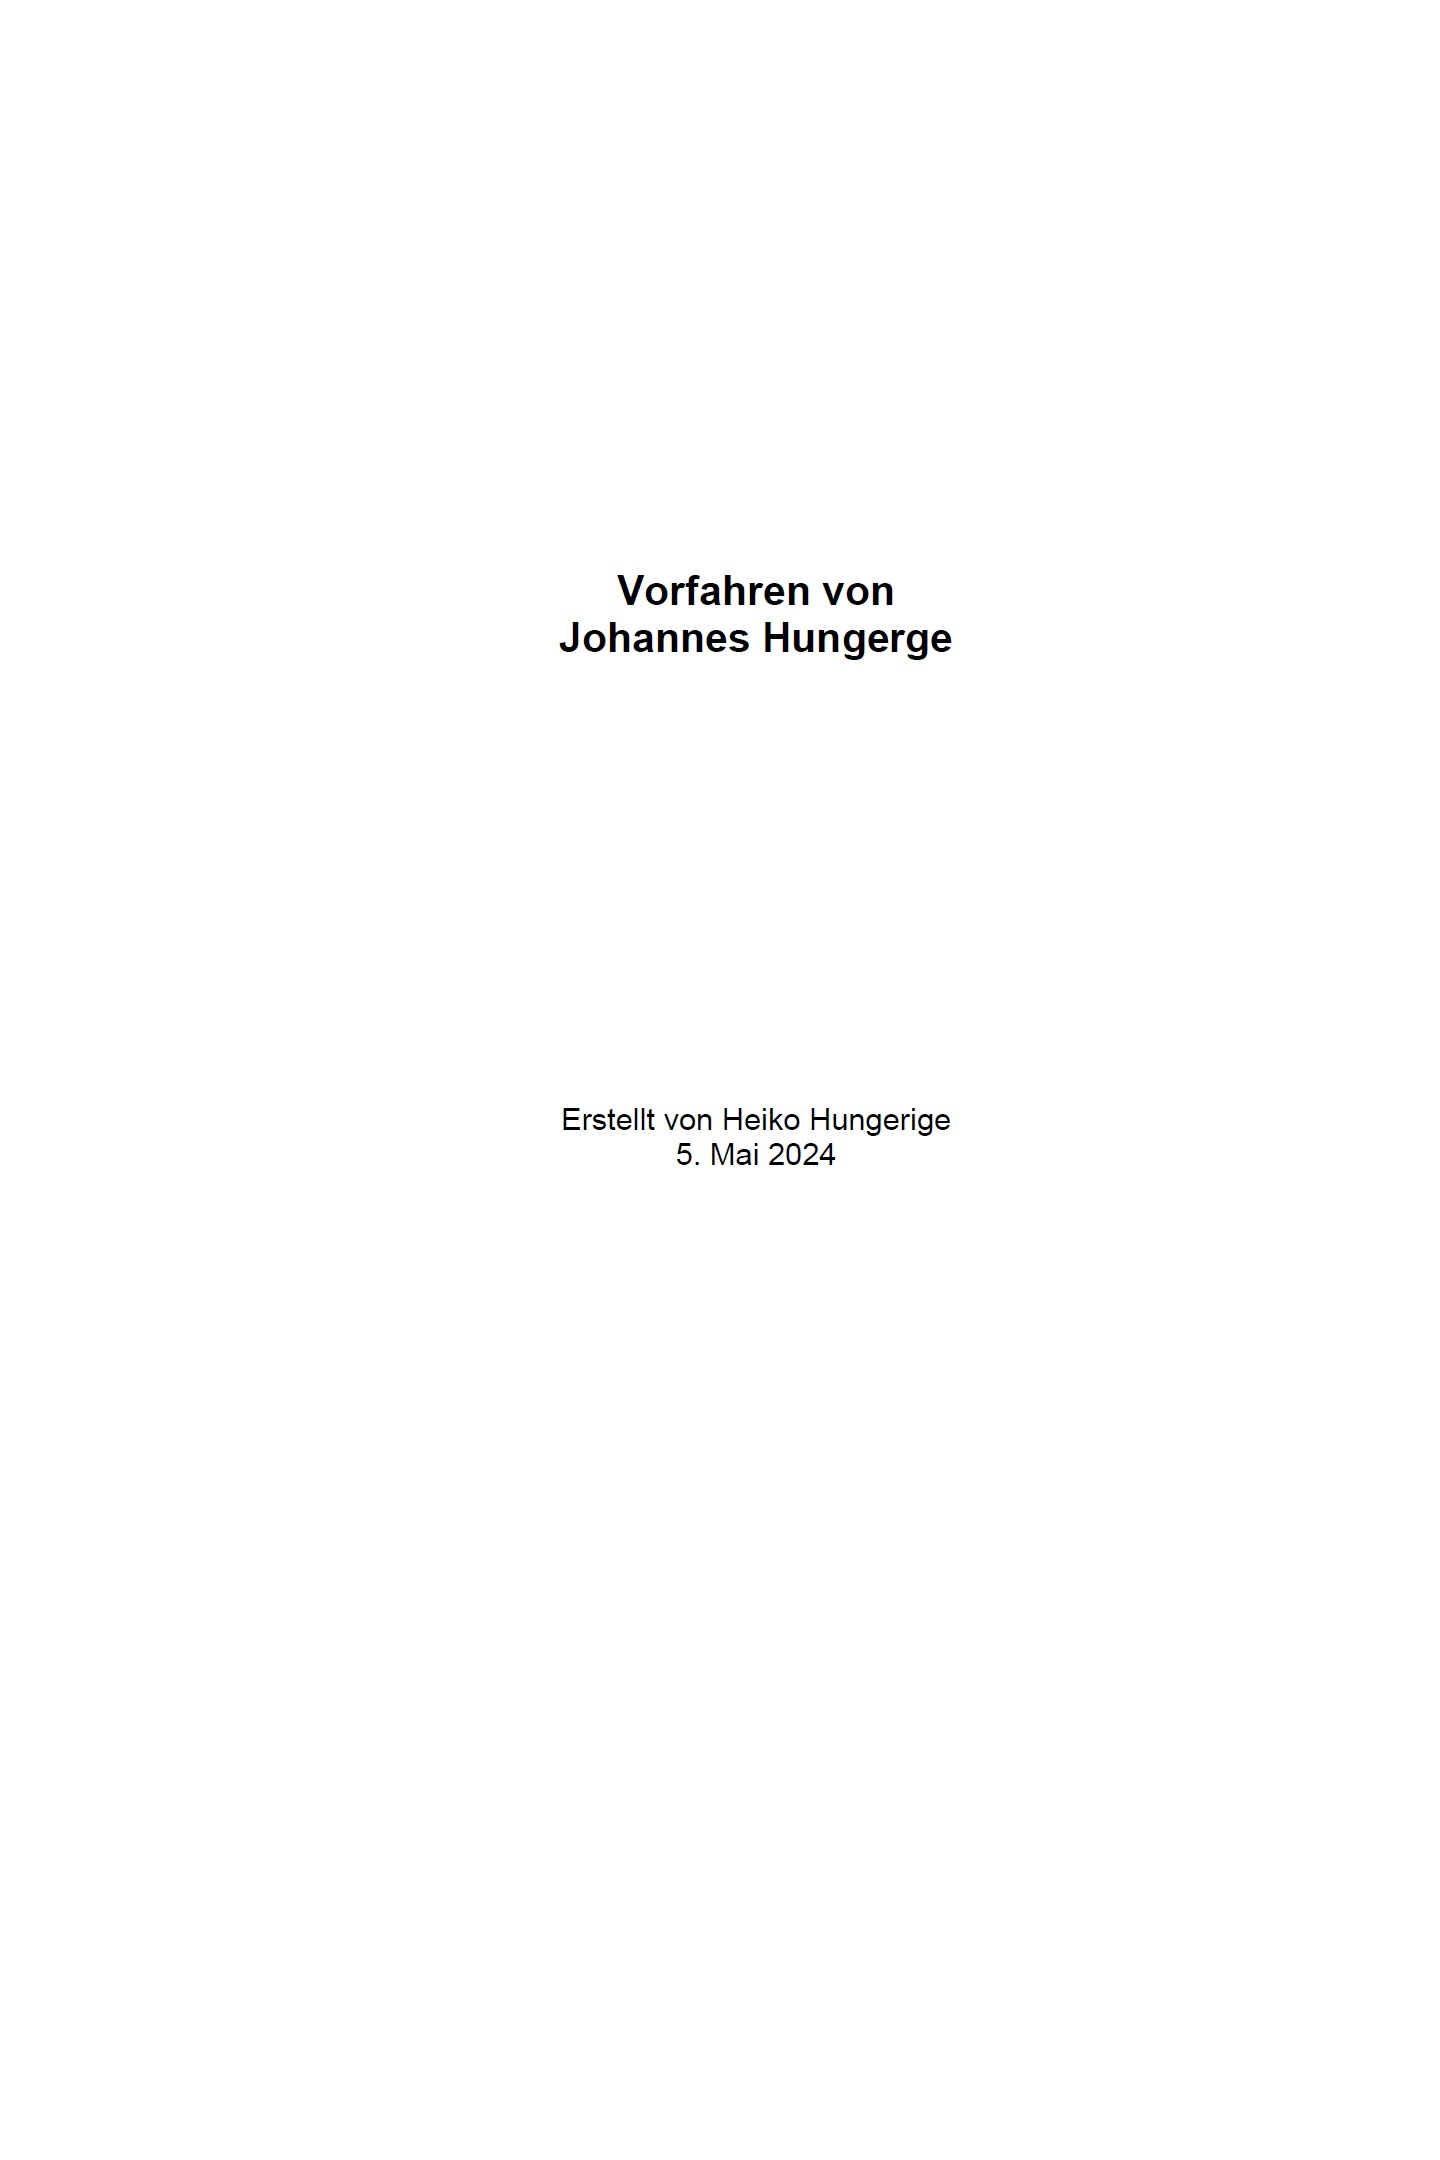 Ahnenbuch (Beispiel 2) mit Family Book Creator (FBC) - Vorfahren von Johannes Hungerge